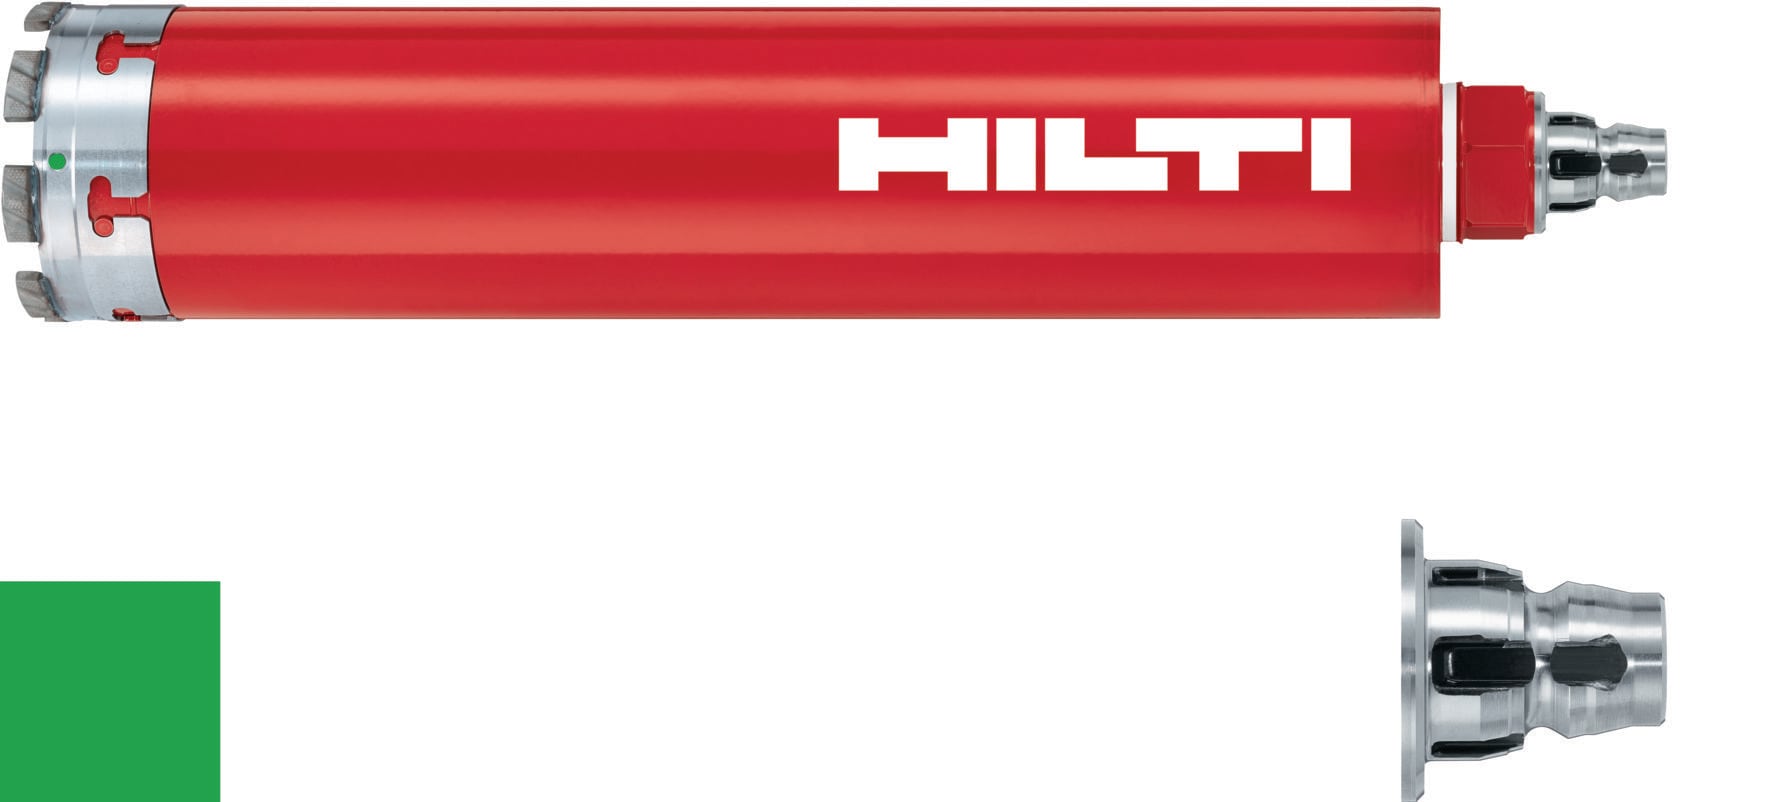 HILTI ヒルティ BX 3用ピン (連発) X-P 17 B3 MX (400本) コンクリート(ハード)17mm 3558702 - 3